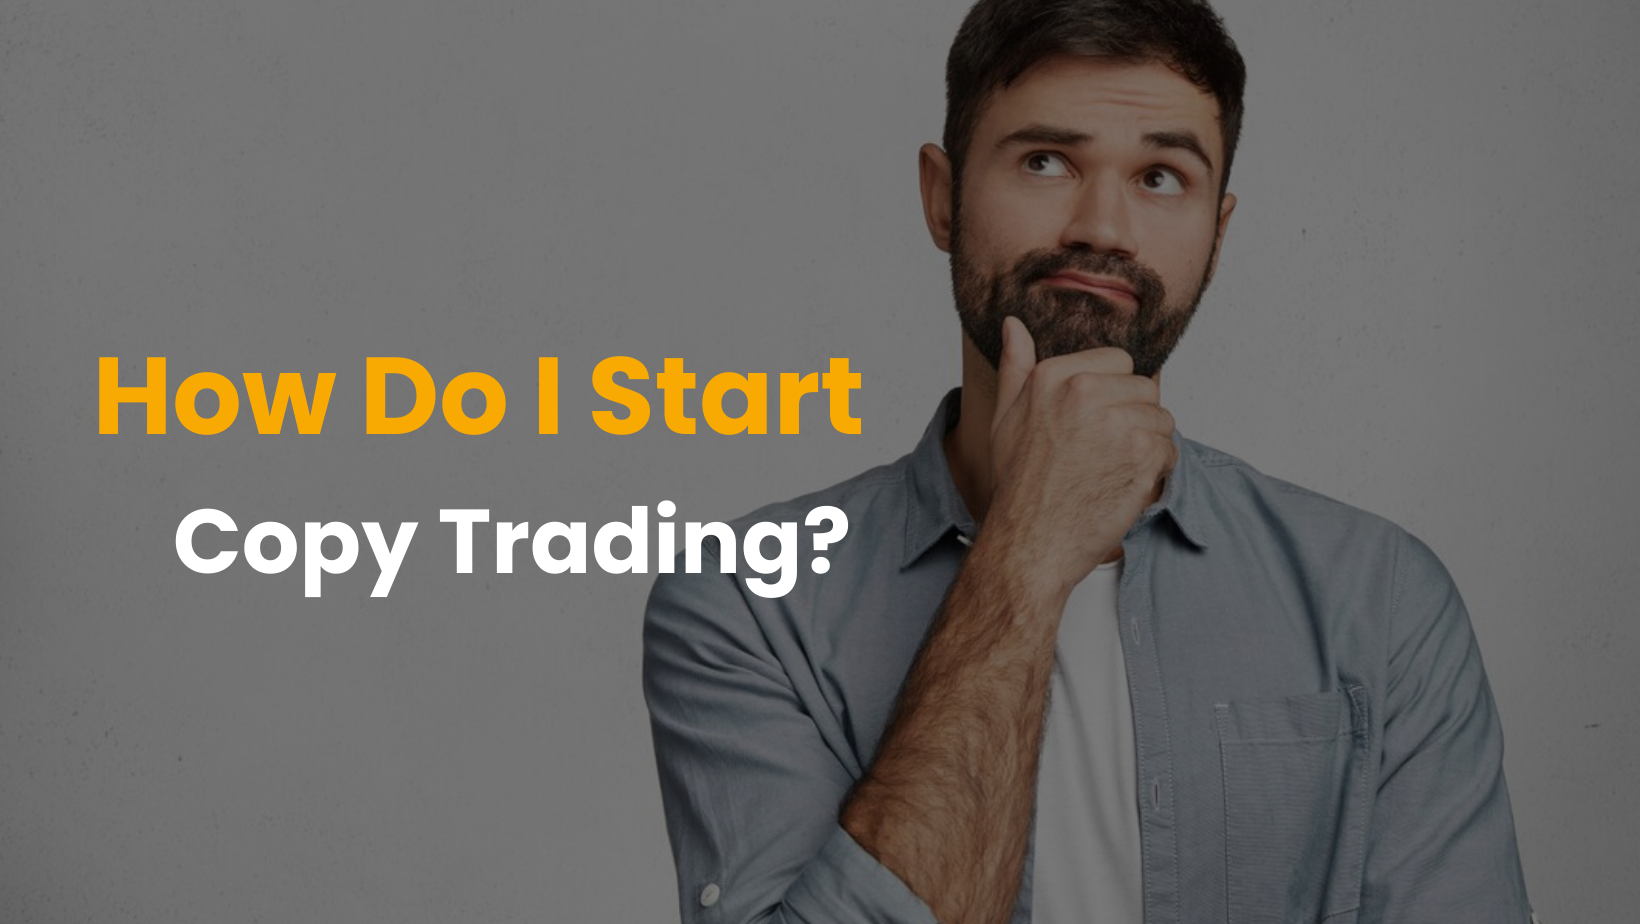 How Do I Start Copy Trading?